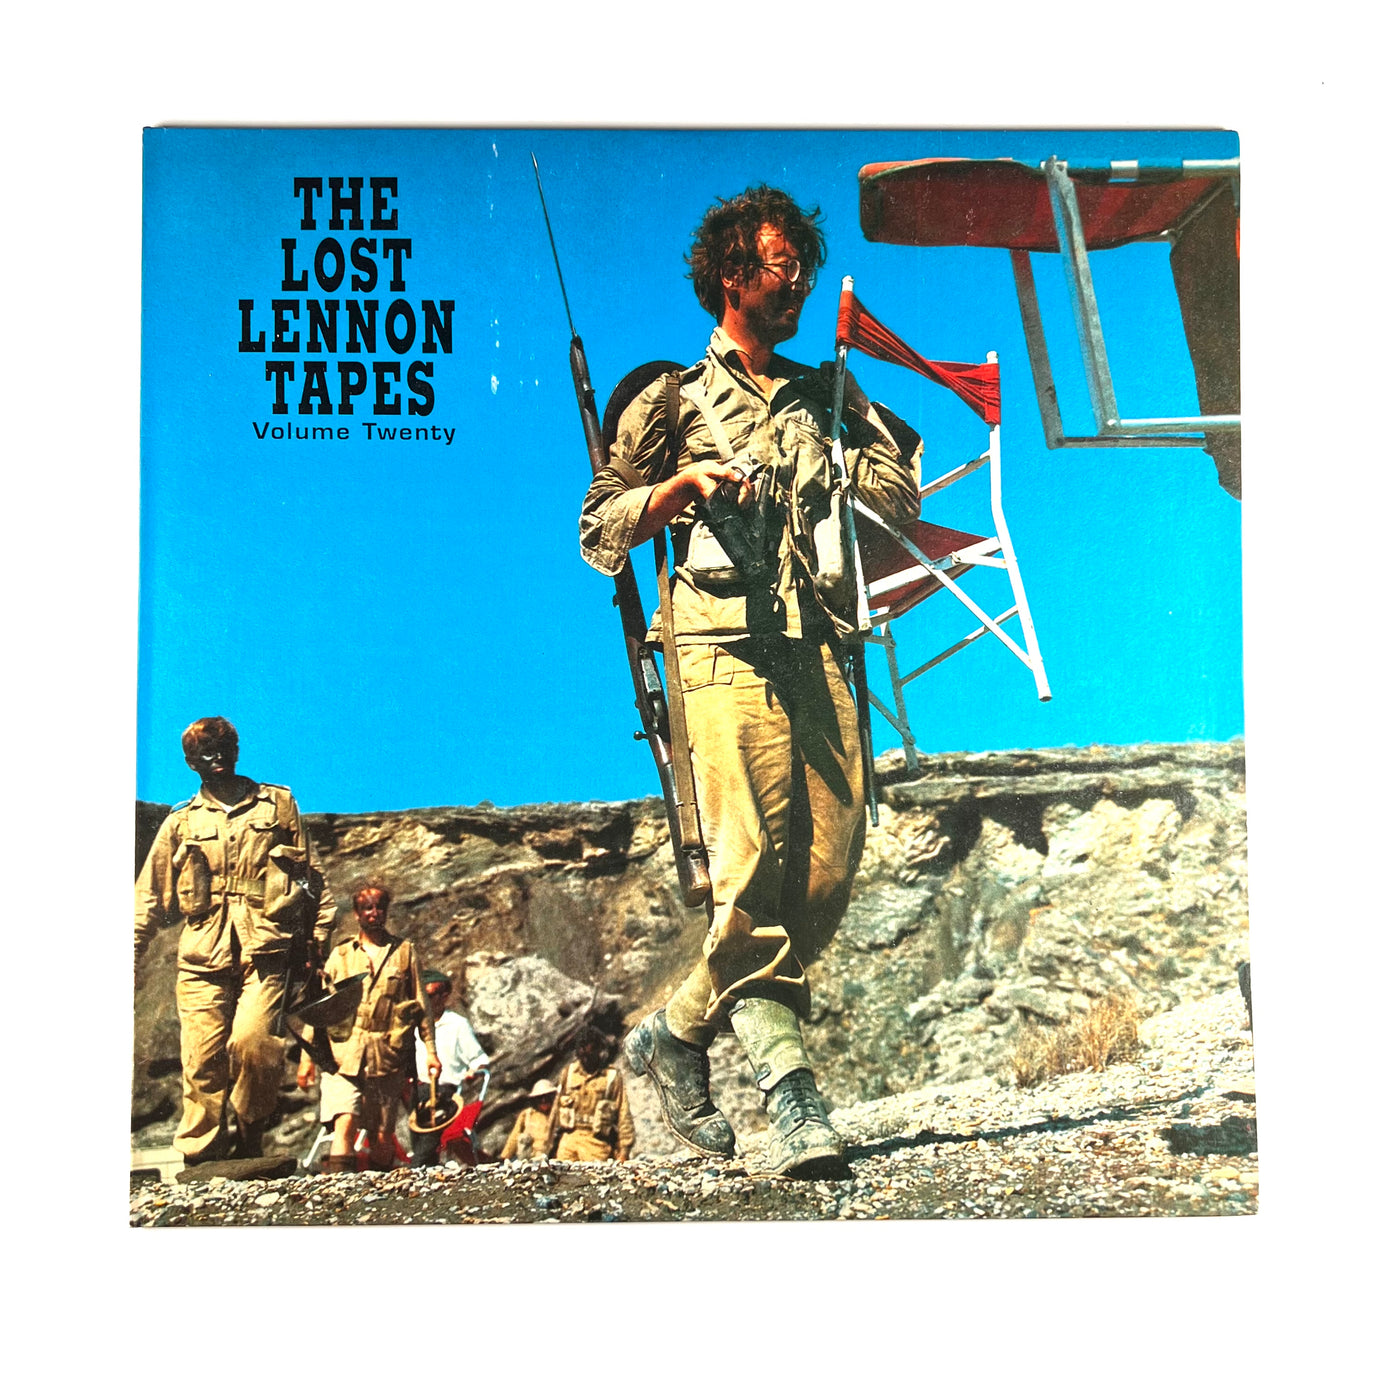 John Lennon - The Lost Lennon Tapes Volume Twenty